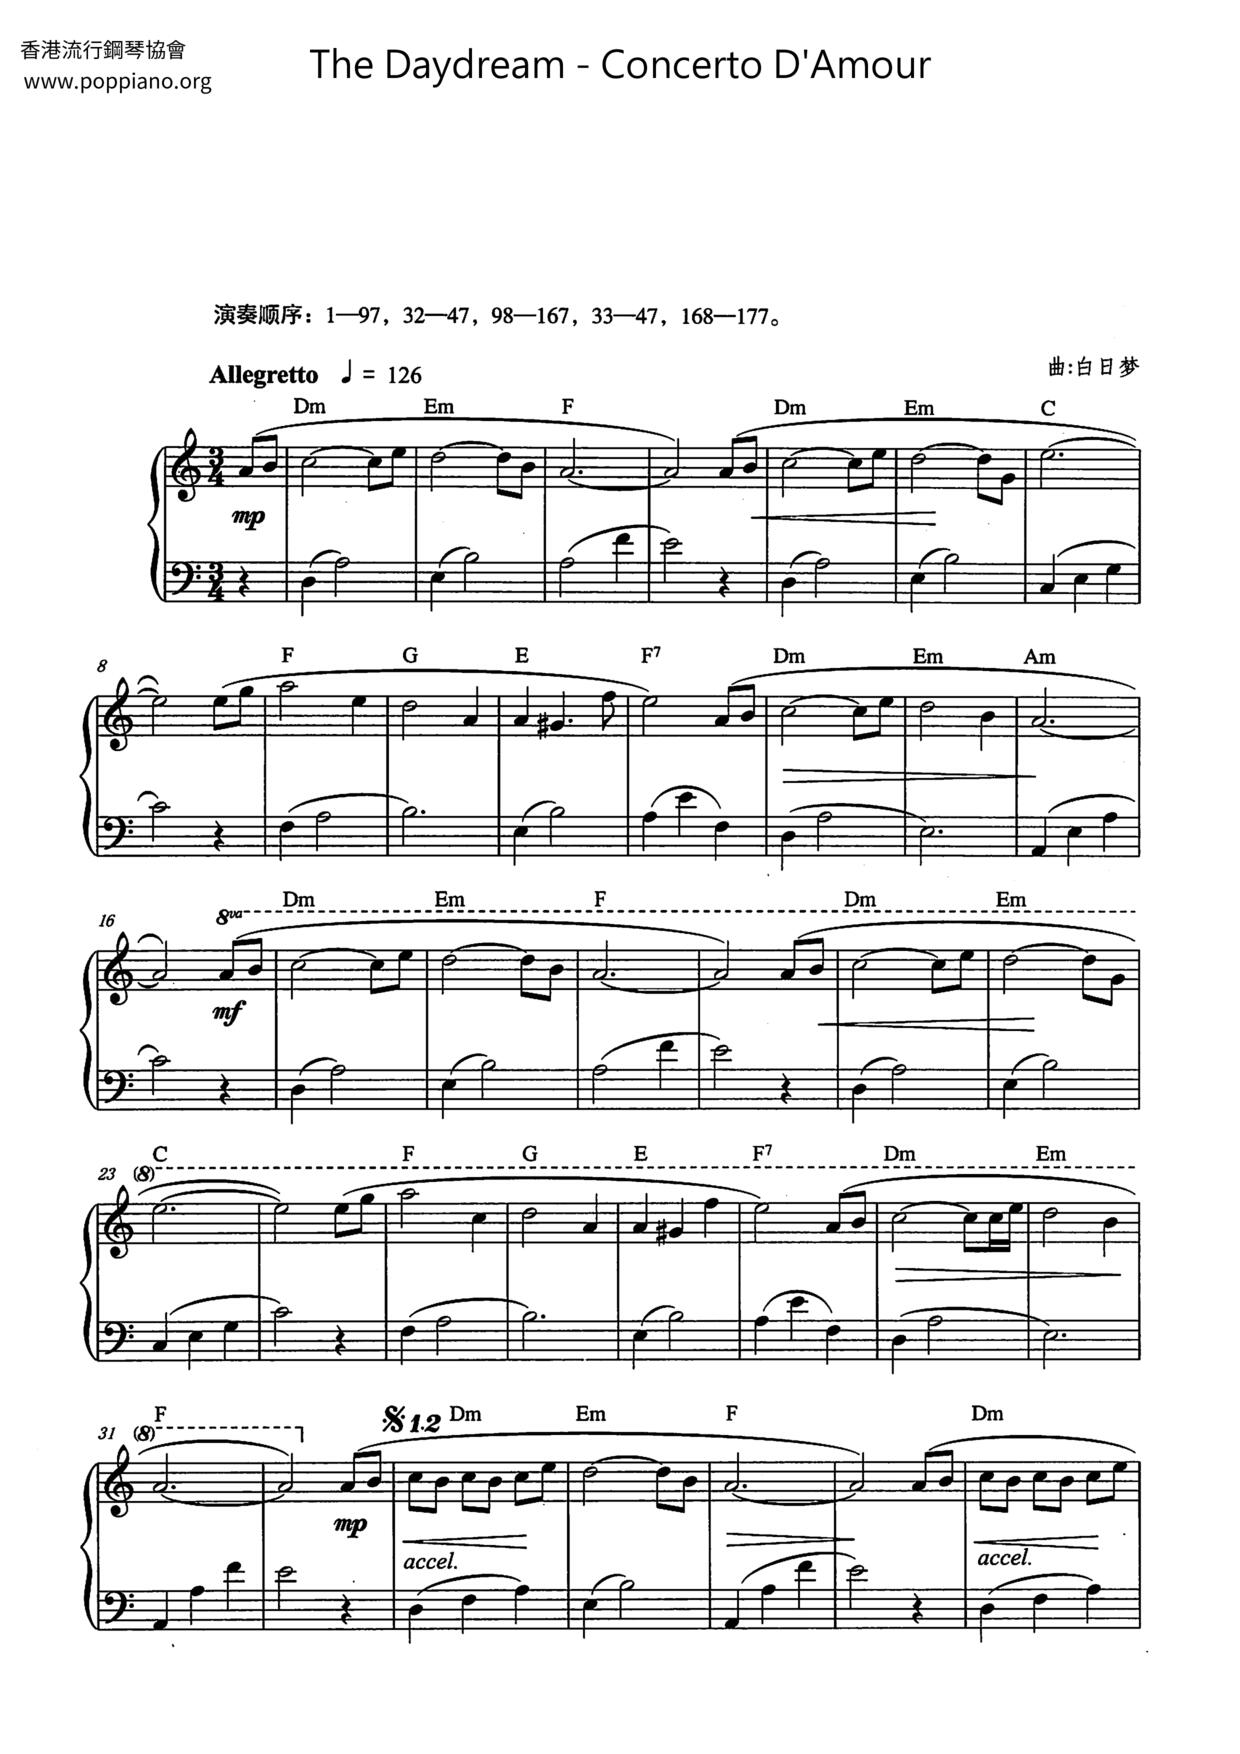 Concerto D'Amour Score